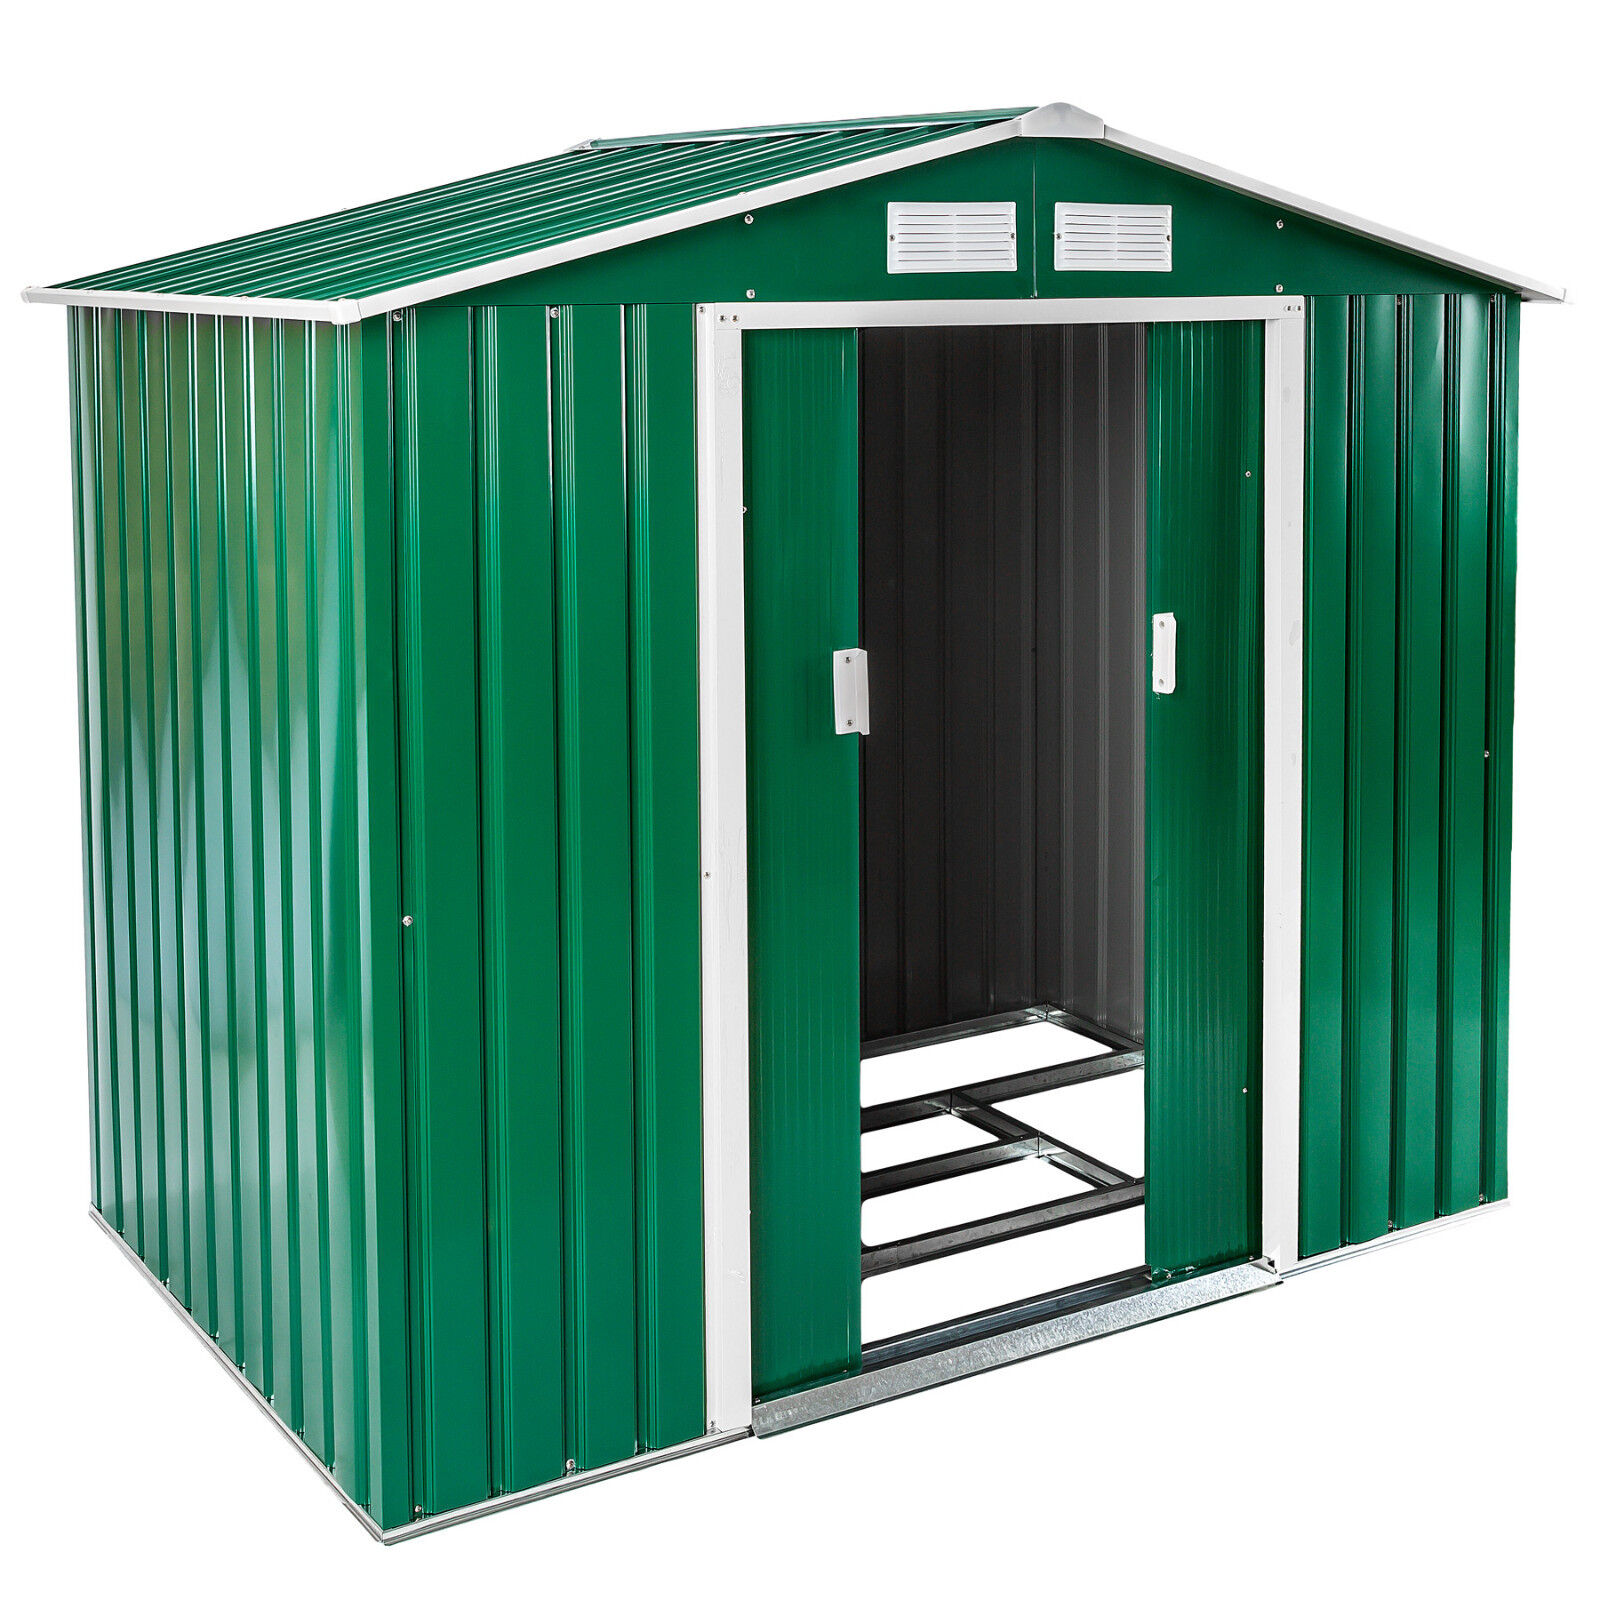 Box casetta metallo per giardino serra attrezzi capannone + fondazione 214x130 n